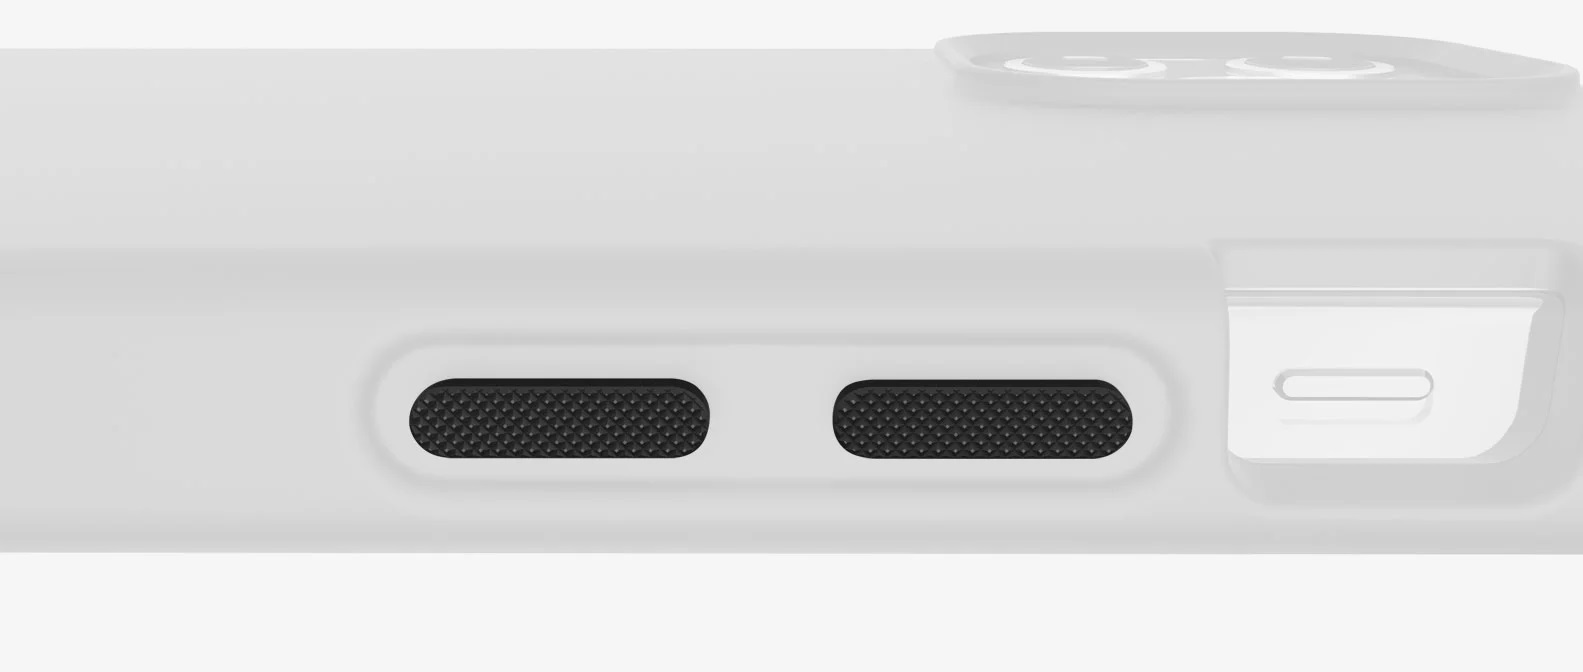 Odolné pouzdro ITSKINS Hybrid Silk 3m pro Apple iPhone 12 Mini, tmavě modrá